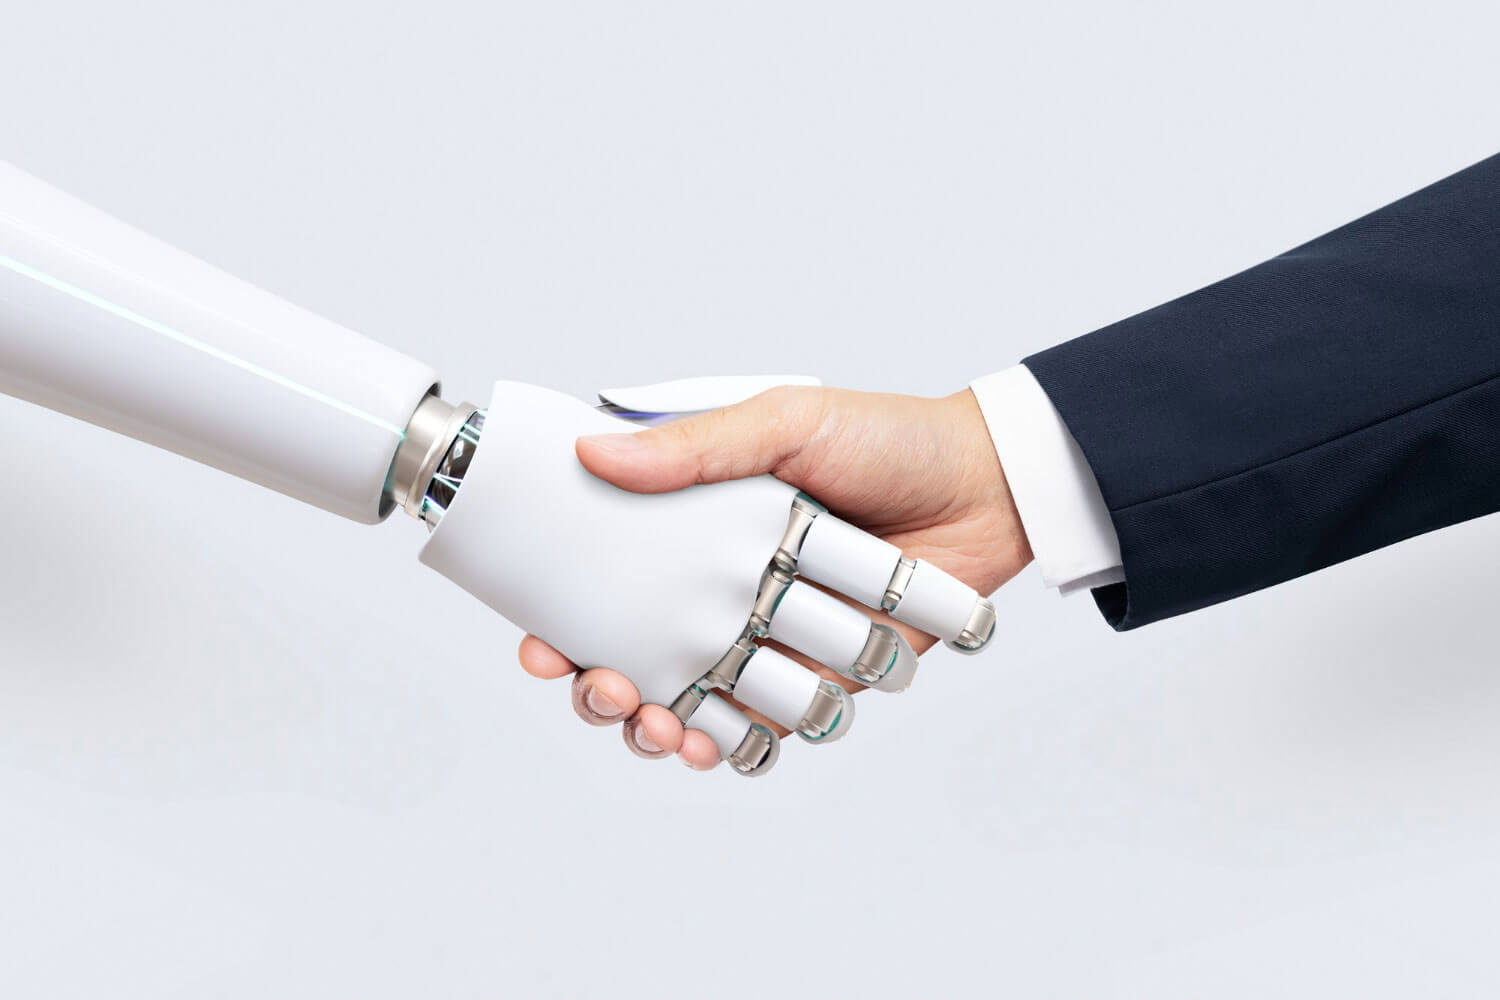 Aperto de mão entre um robô e um humano simbolizando uma união de desenvolvimento e crescimento empresarial com o uso da inteligência artificial no marketing.